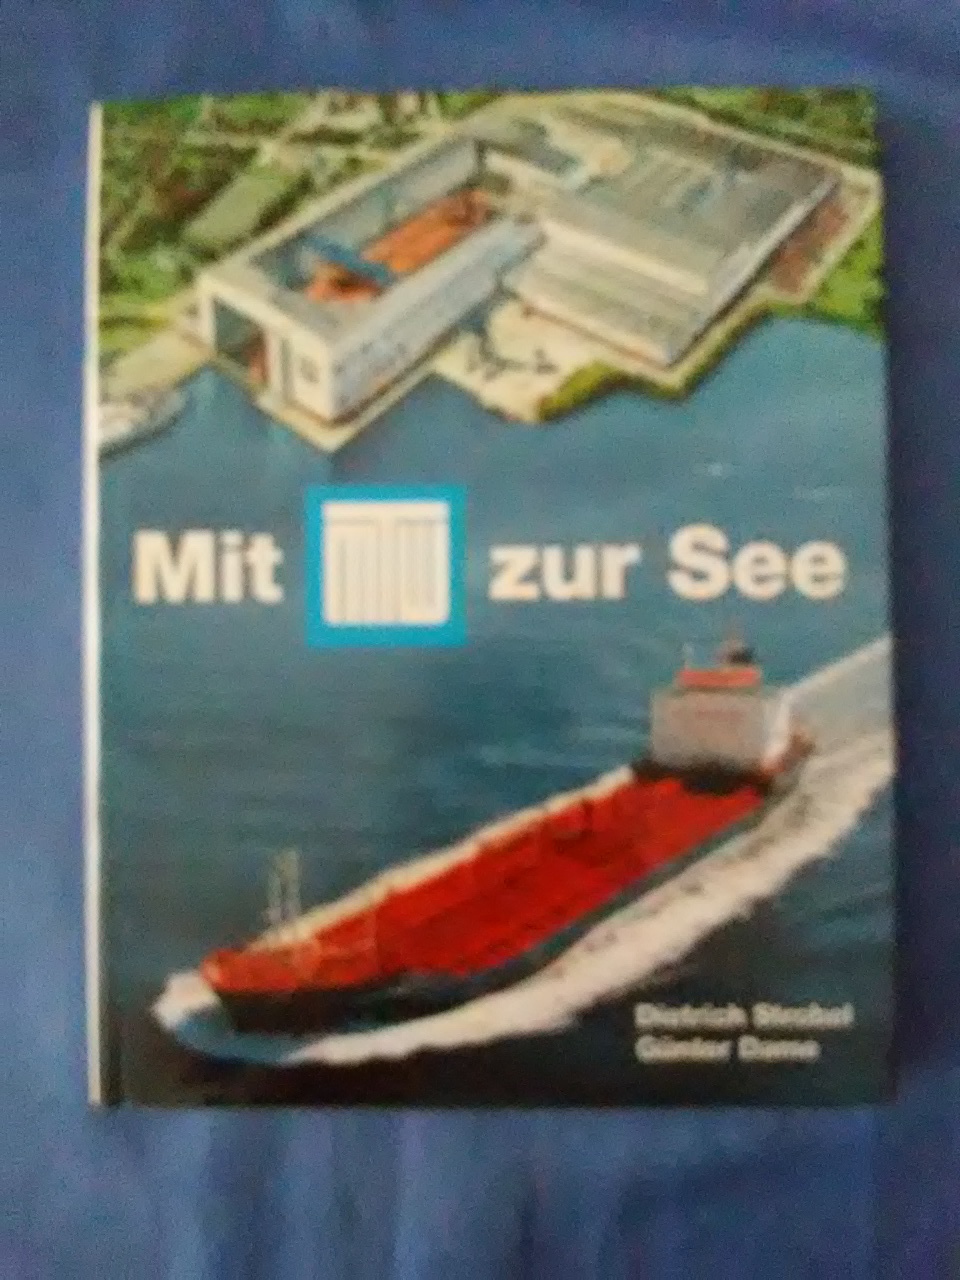 Mit MTW zur See : Schiffbau in Wismar. Dietrich Strobel ; Günter Dame. - Strobel, Dietrich (Mitwirkender) und Günter (Mitwirkender) Dame